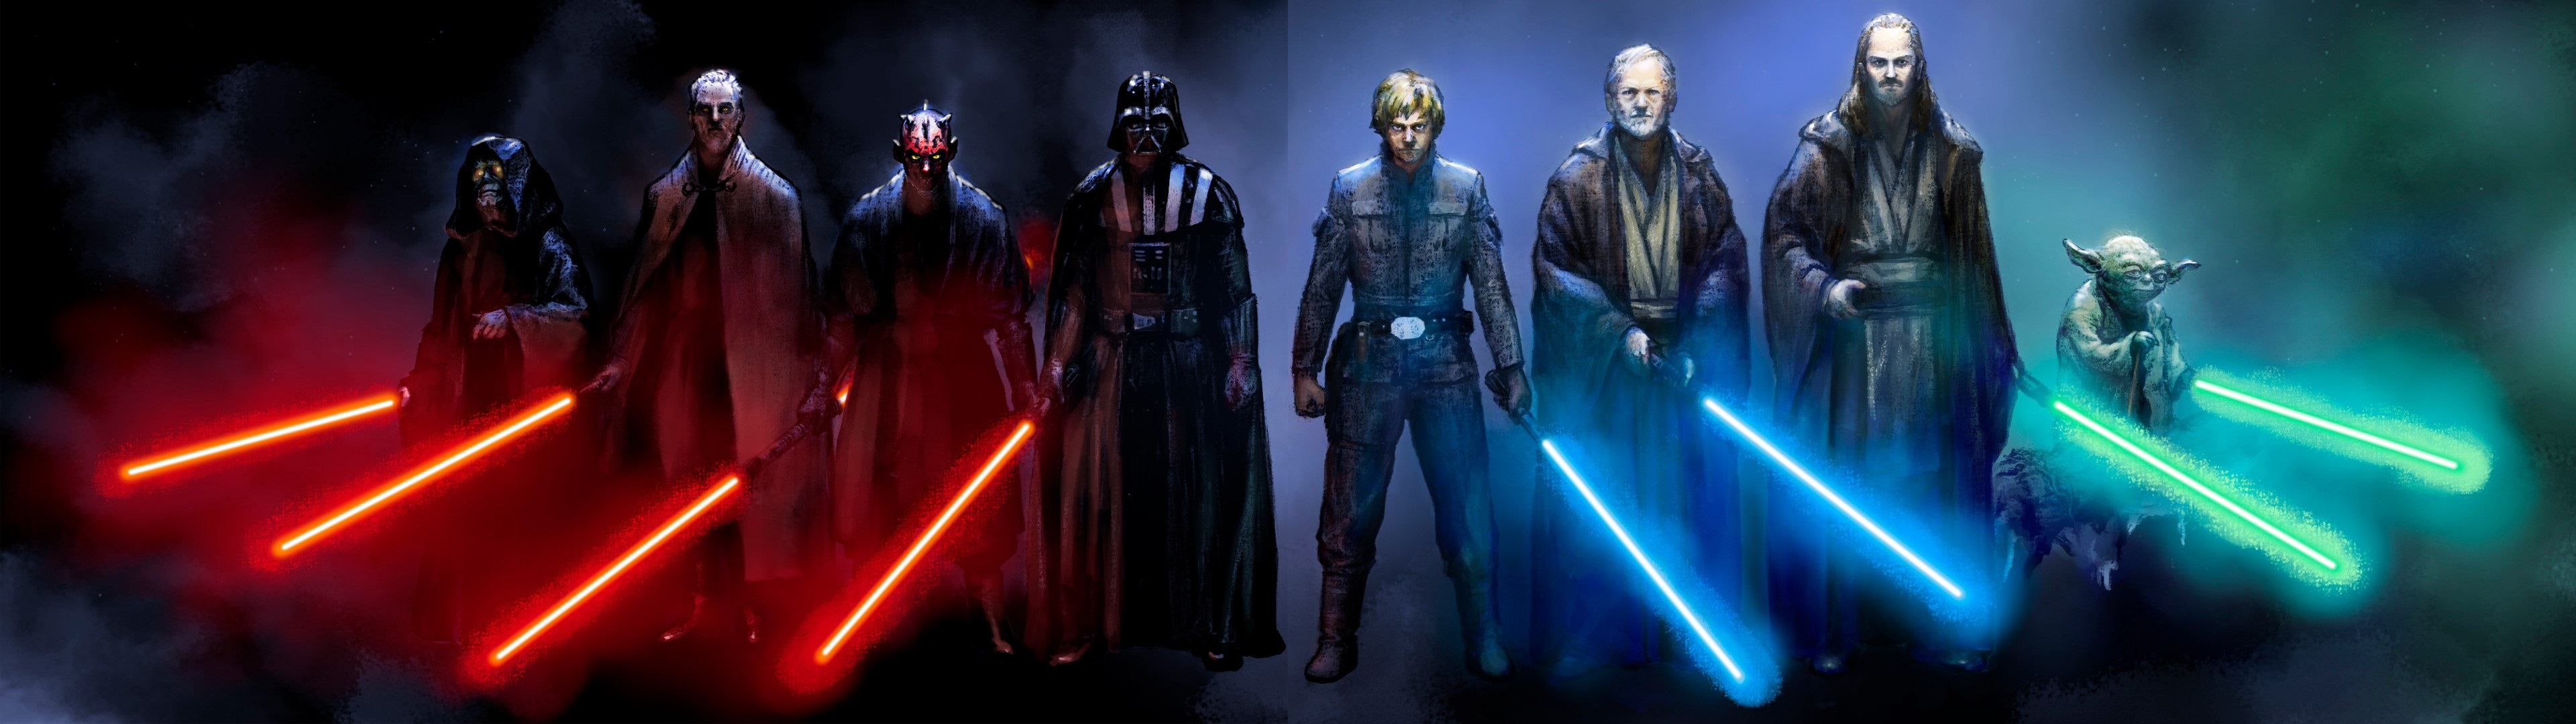 Darth Vader Darth Maul Yoda Obi Wan Kenobi Sith Star Wars Jedi Lightsaber Qui Gon Jinn Emperor Palpa 3840x1080